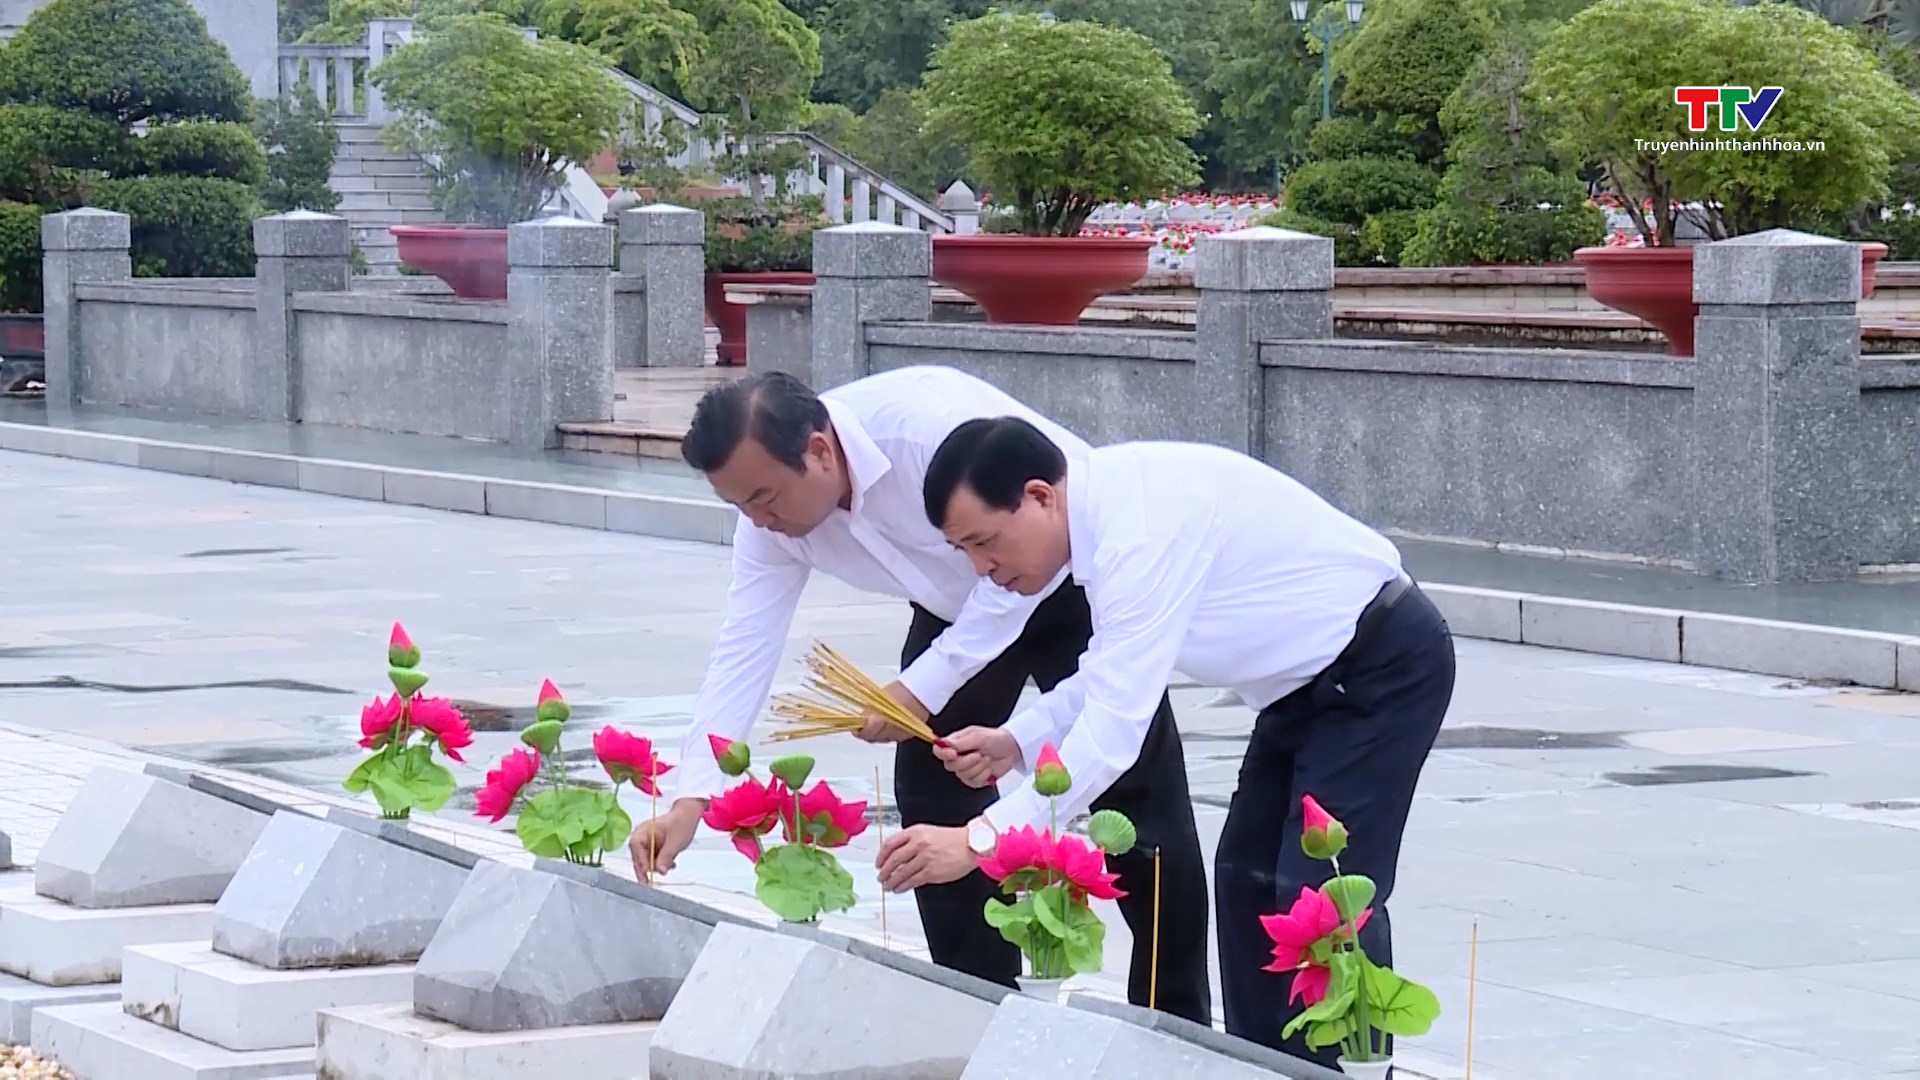 Đồng chí Phó Bí thư Thường trực Tỉnh ủy Lại Thế Nguyên viếng nghĩa trang liệt sỹ tại tỉnh Tây Ninh - Ảnh 3.